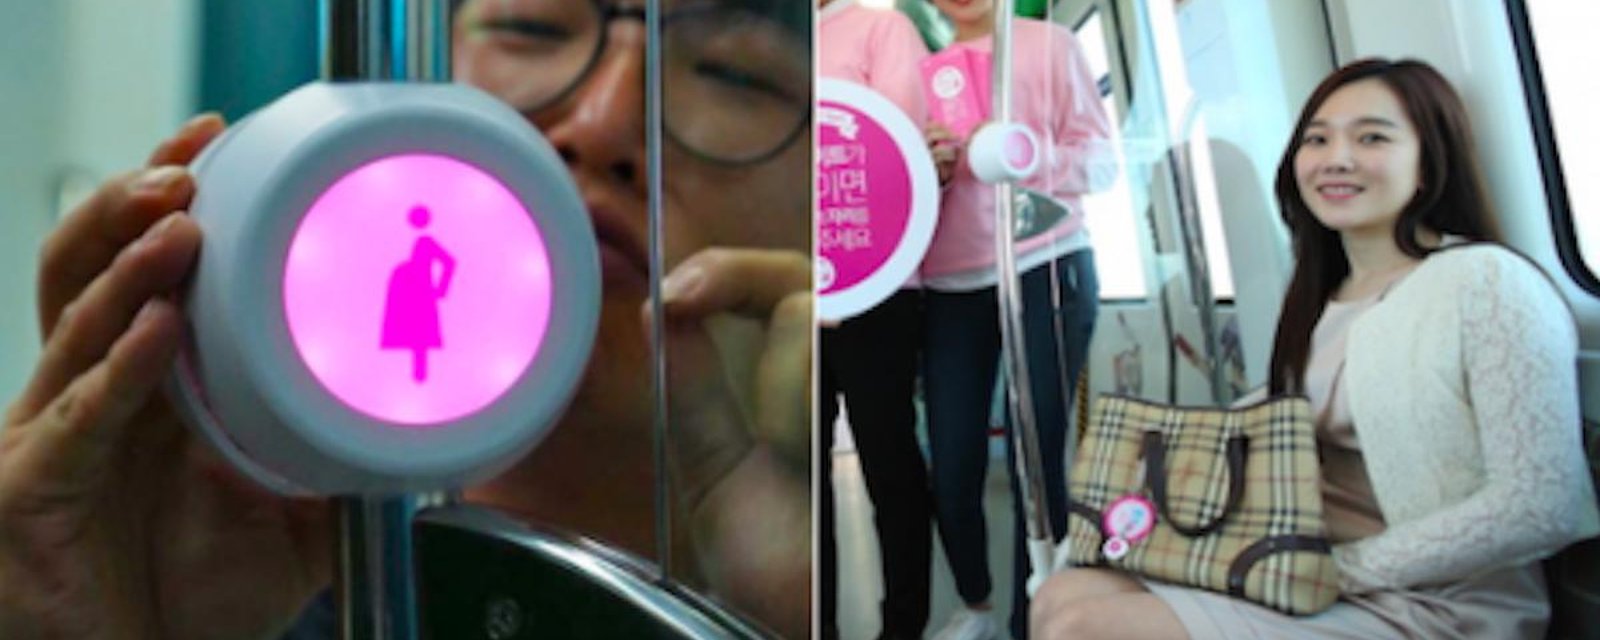 Une invention pour aider les femmes enceintes à avoir une place assise dans le métro